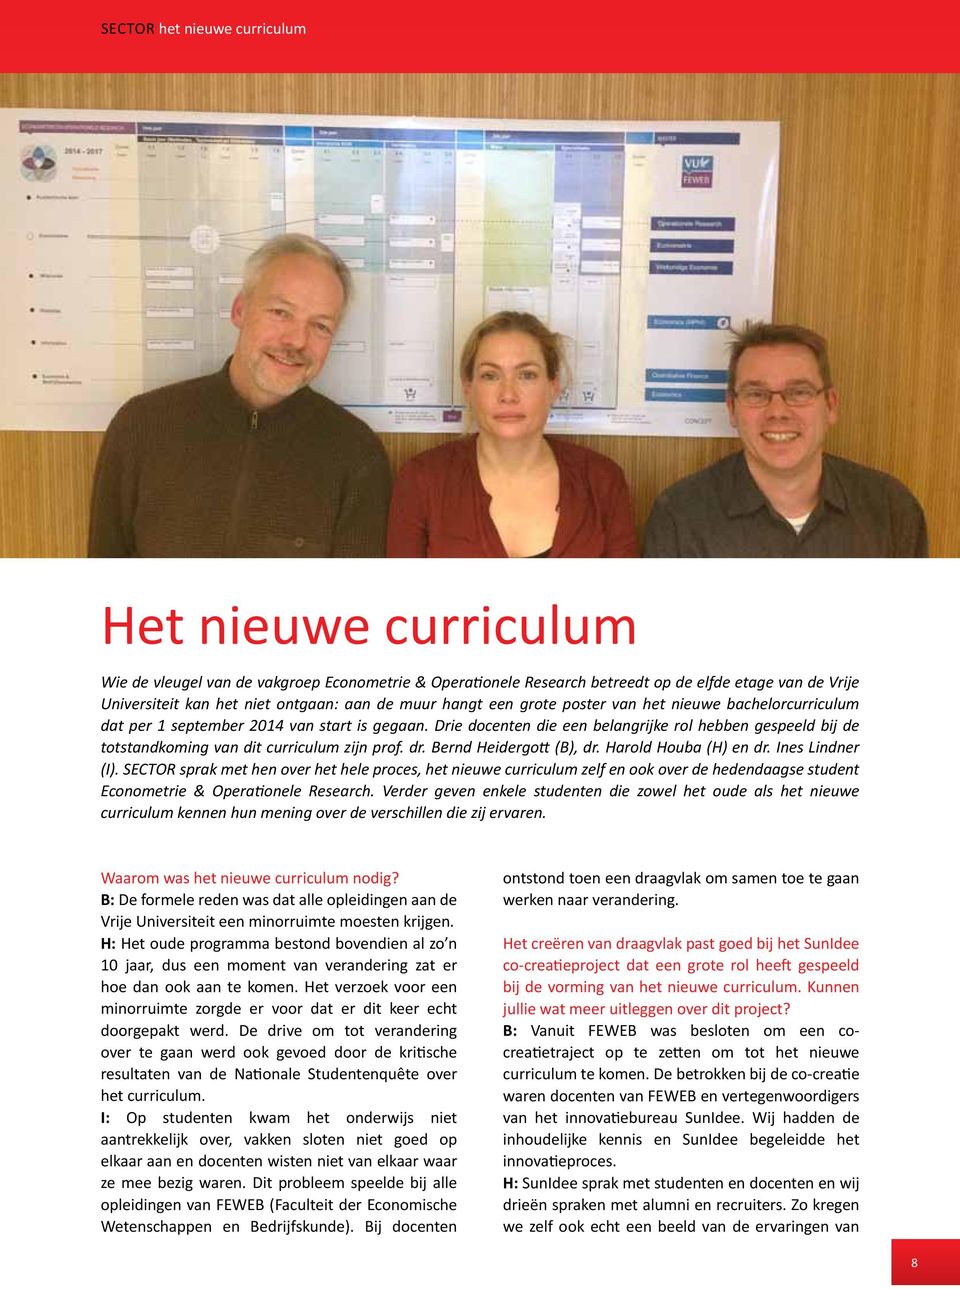 Drie docenten die een belangrijke rol hebben gespeeld bij de totstandkoming van dit curriculum zijn prof. dr. Bernd Heidergott (B), dr. Harold Houba (H) en dr. Ines Lindner (I).